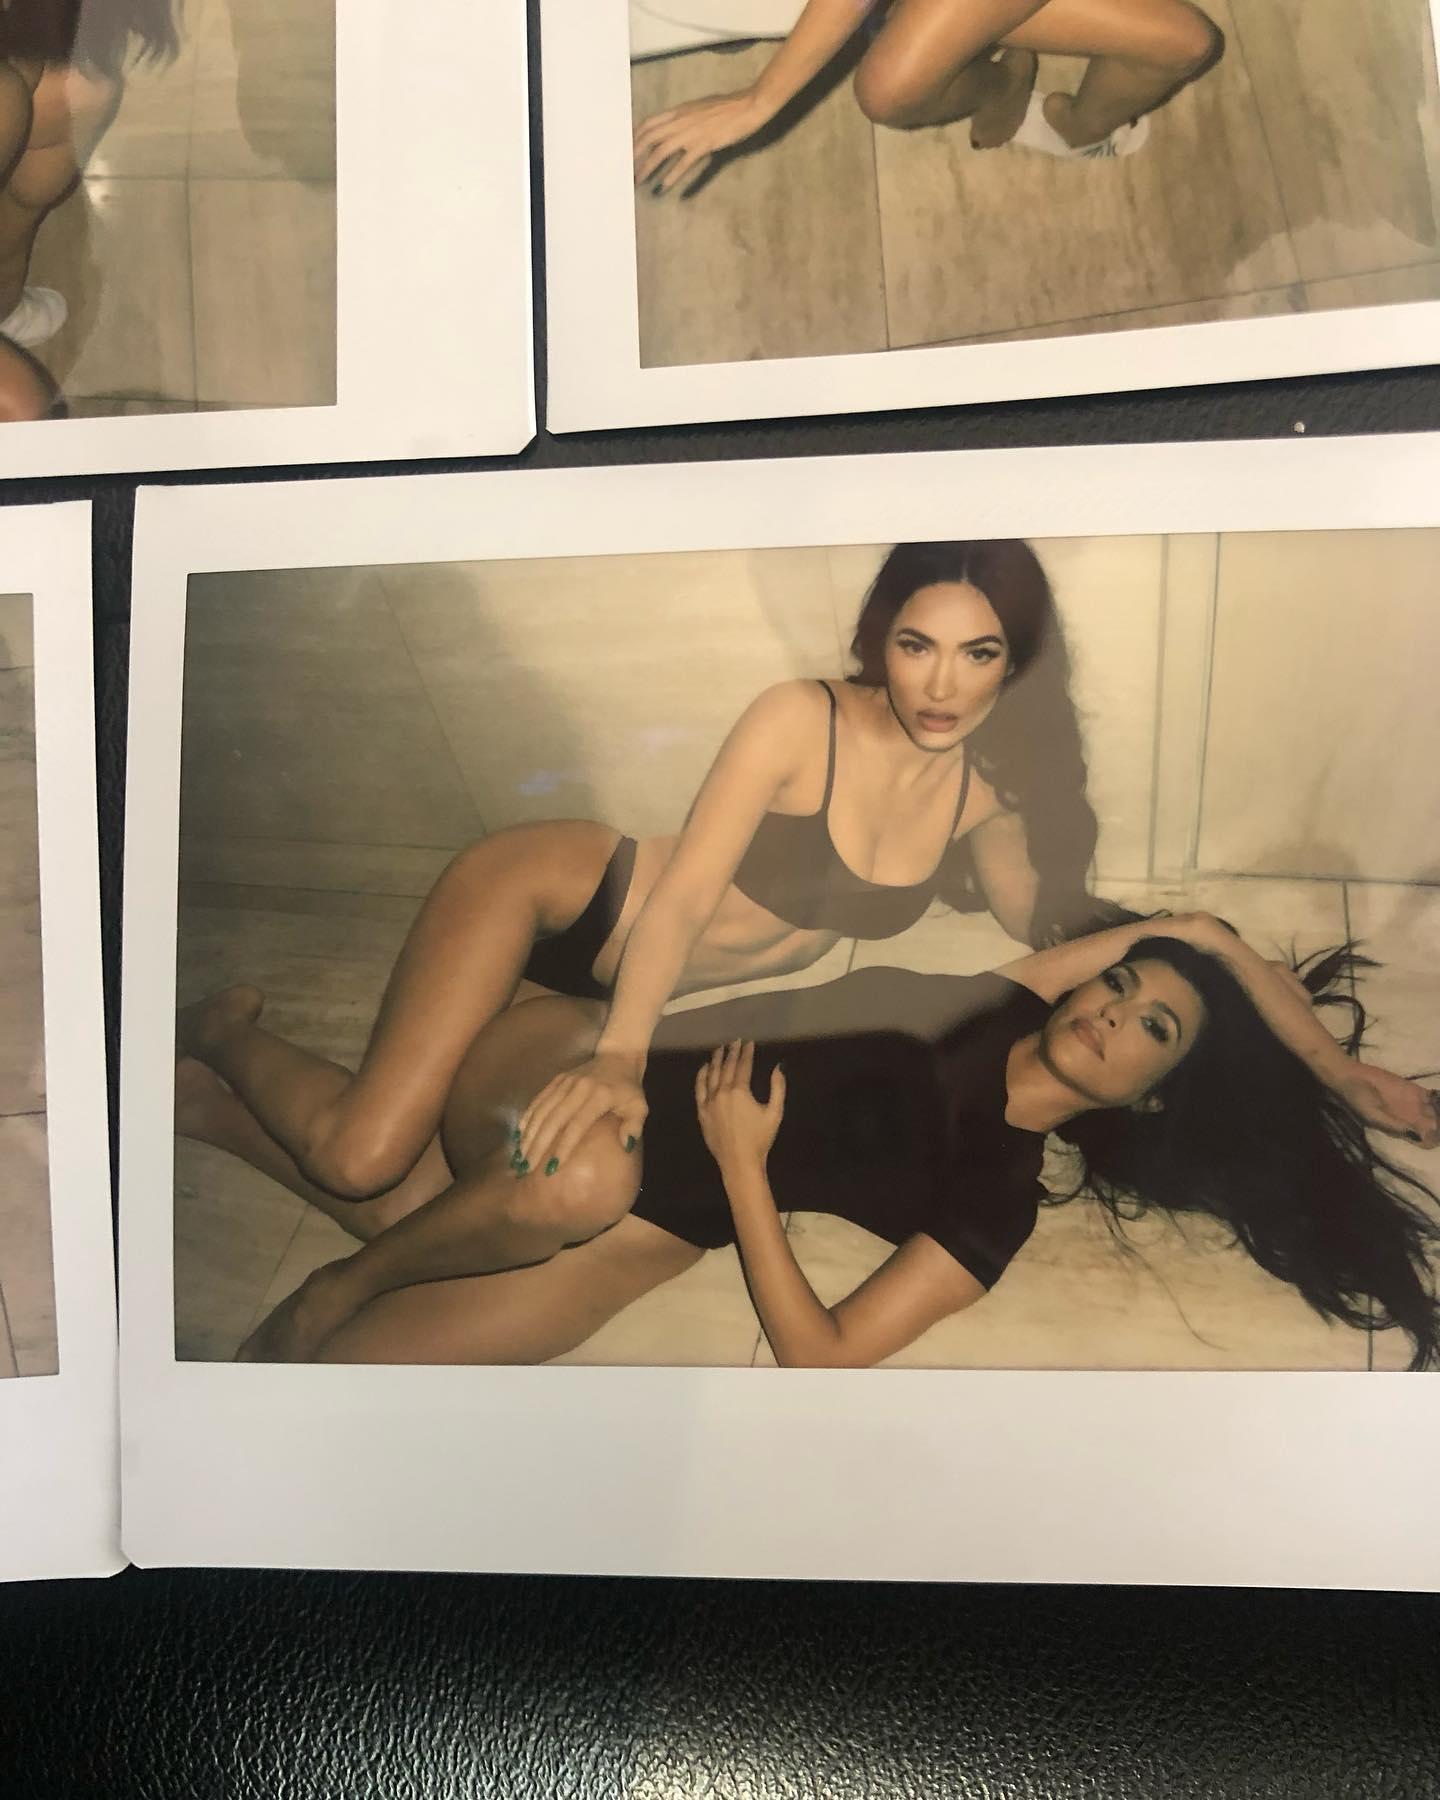 Megan Fox and Kourtney Kardashian debate starting an OnlyFans